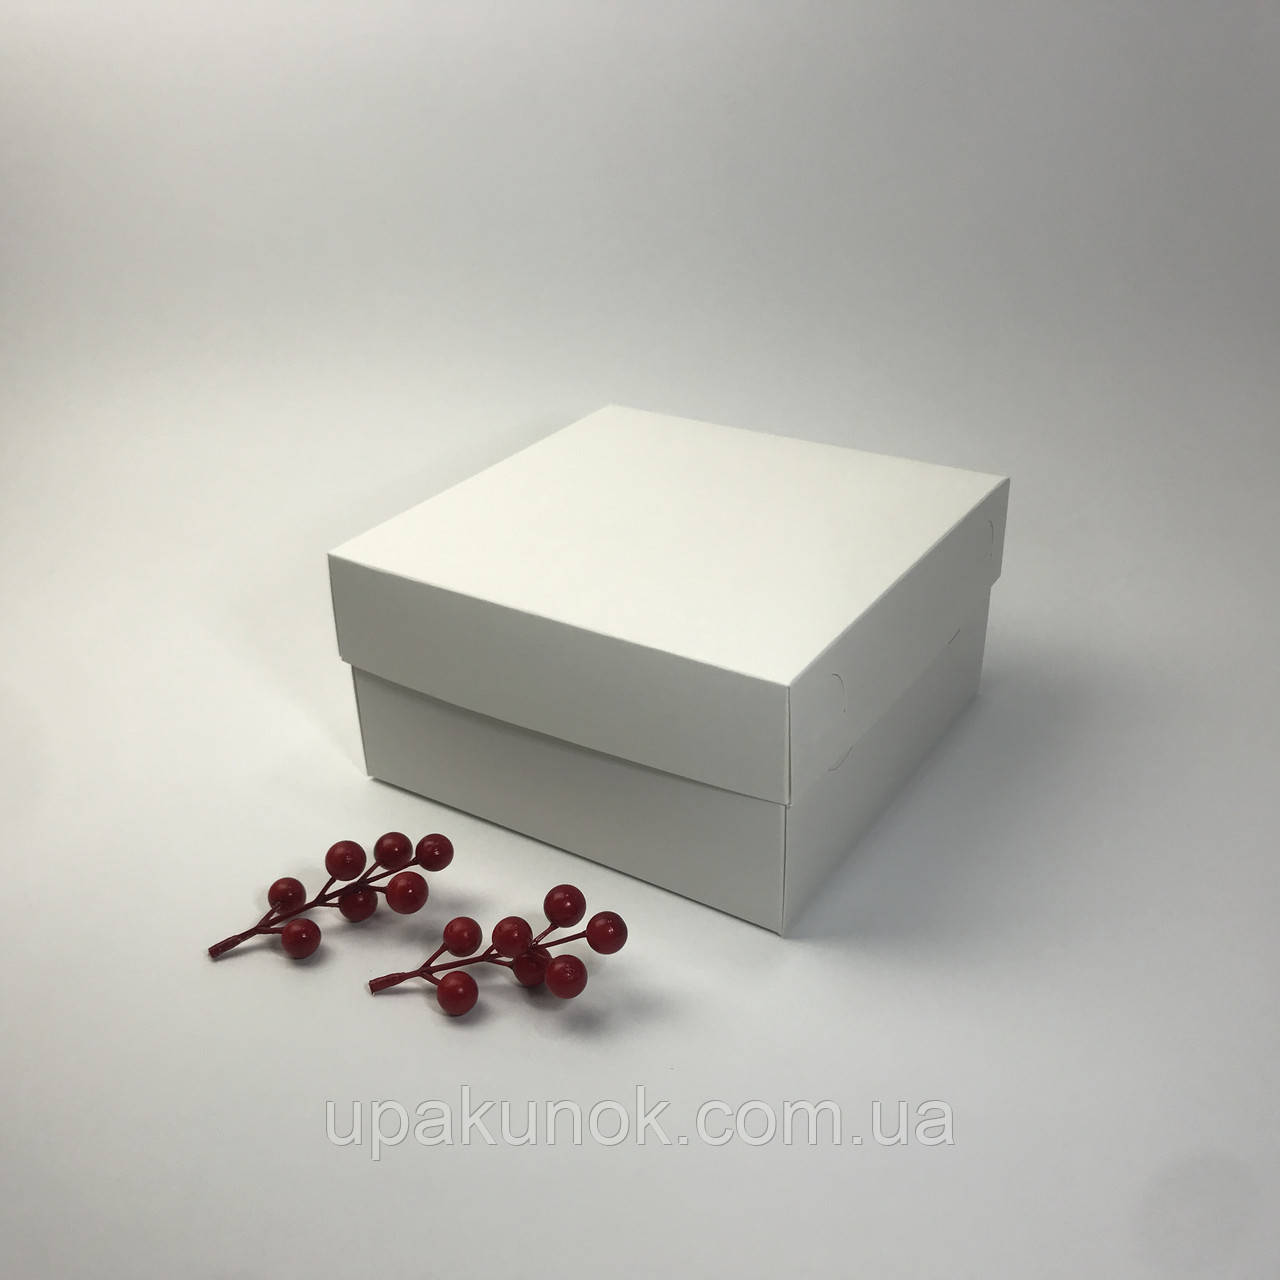 Коробка для капкейків (4 шт), 200*200*105 мм, без вікна, біла